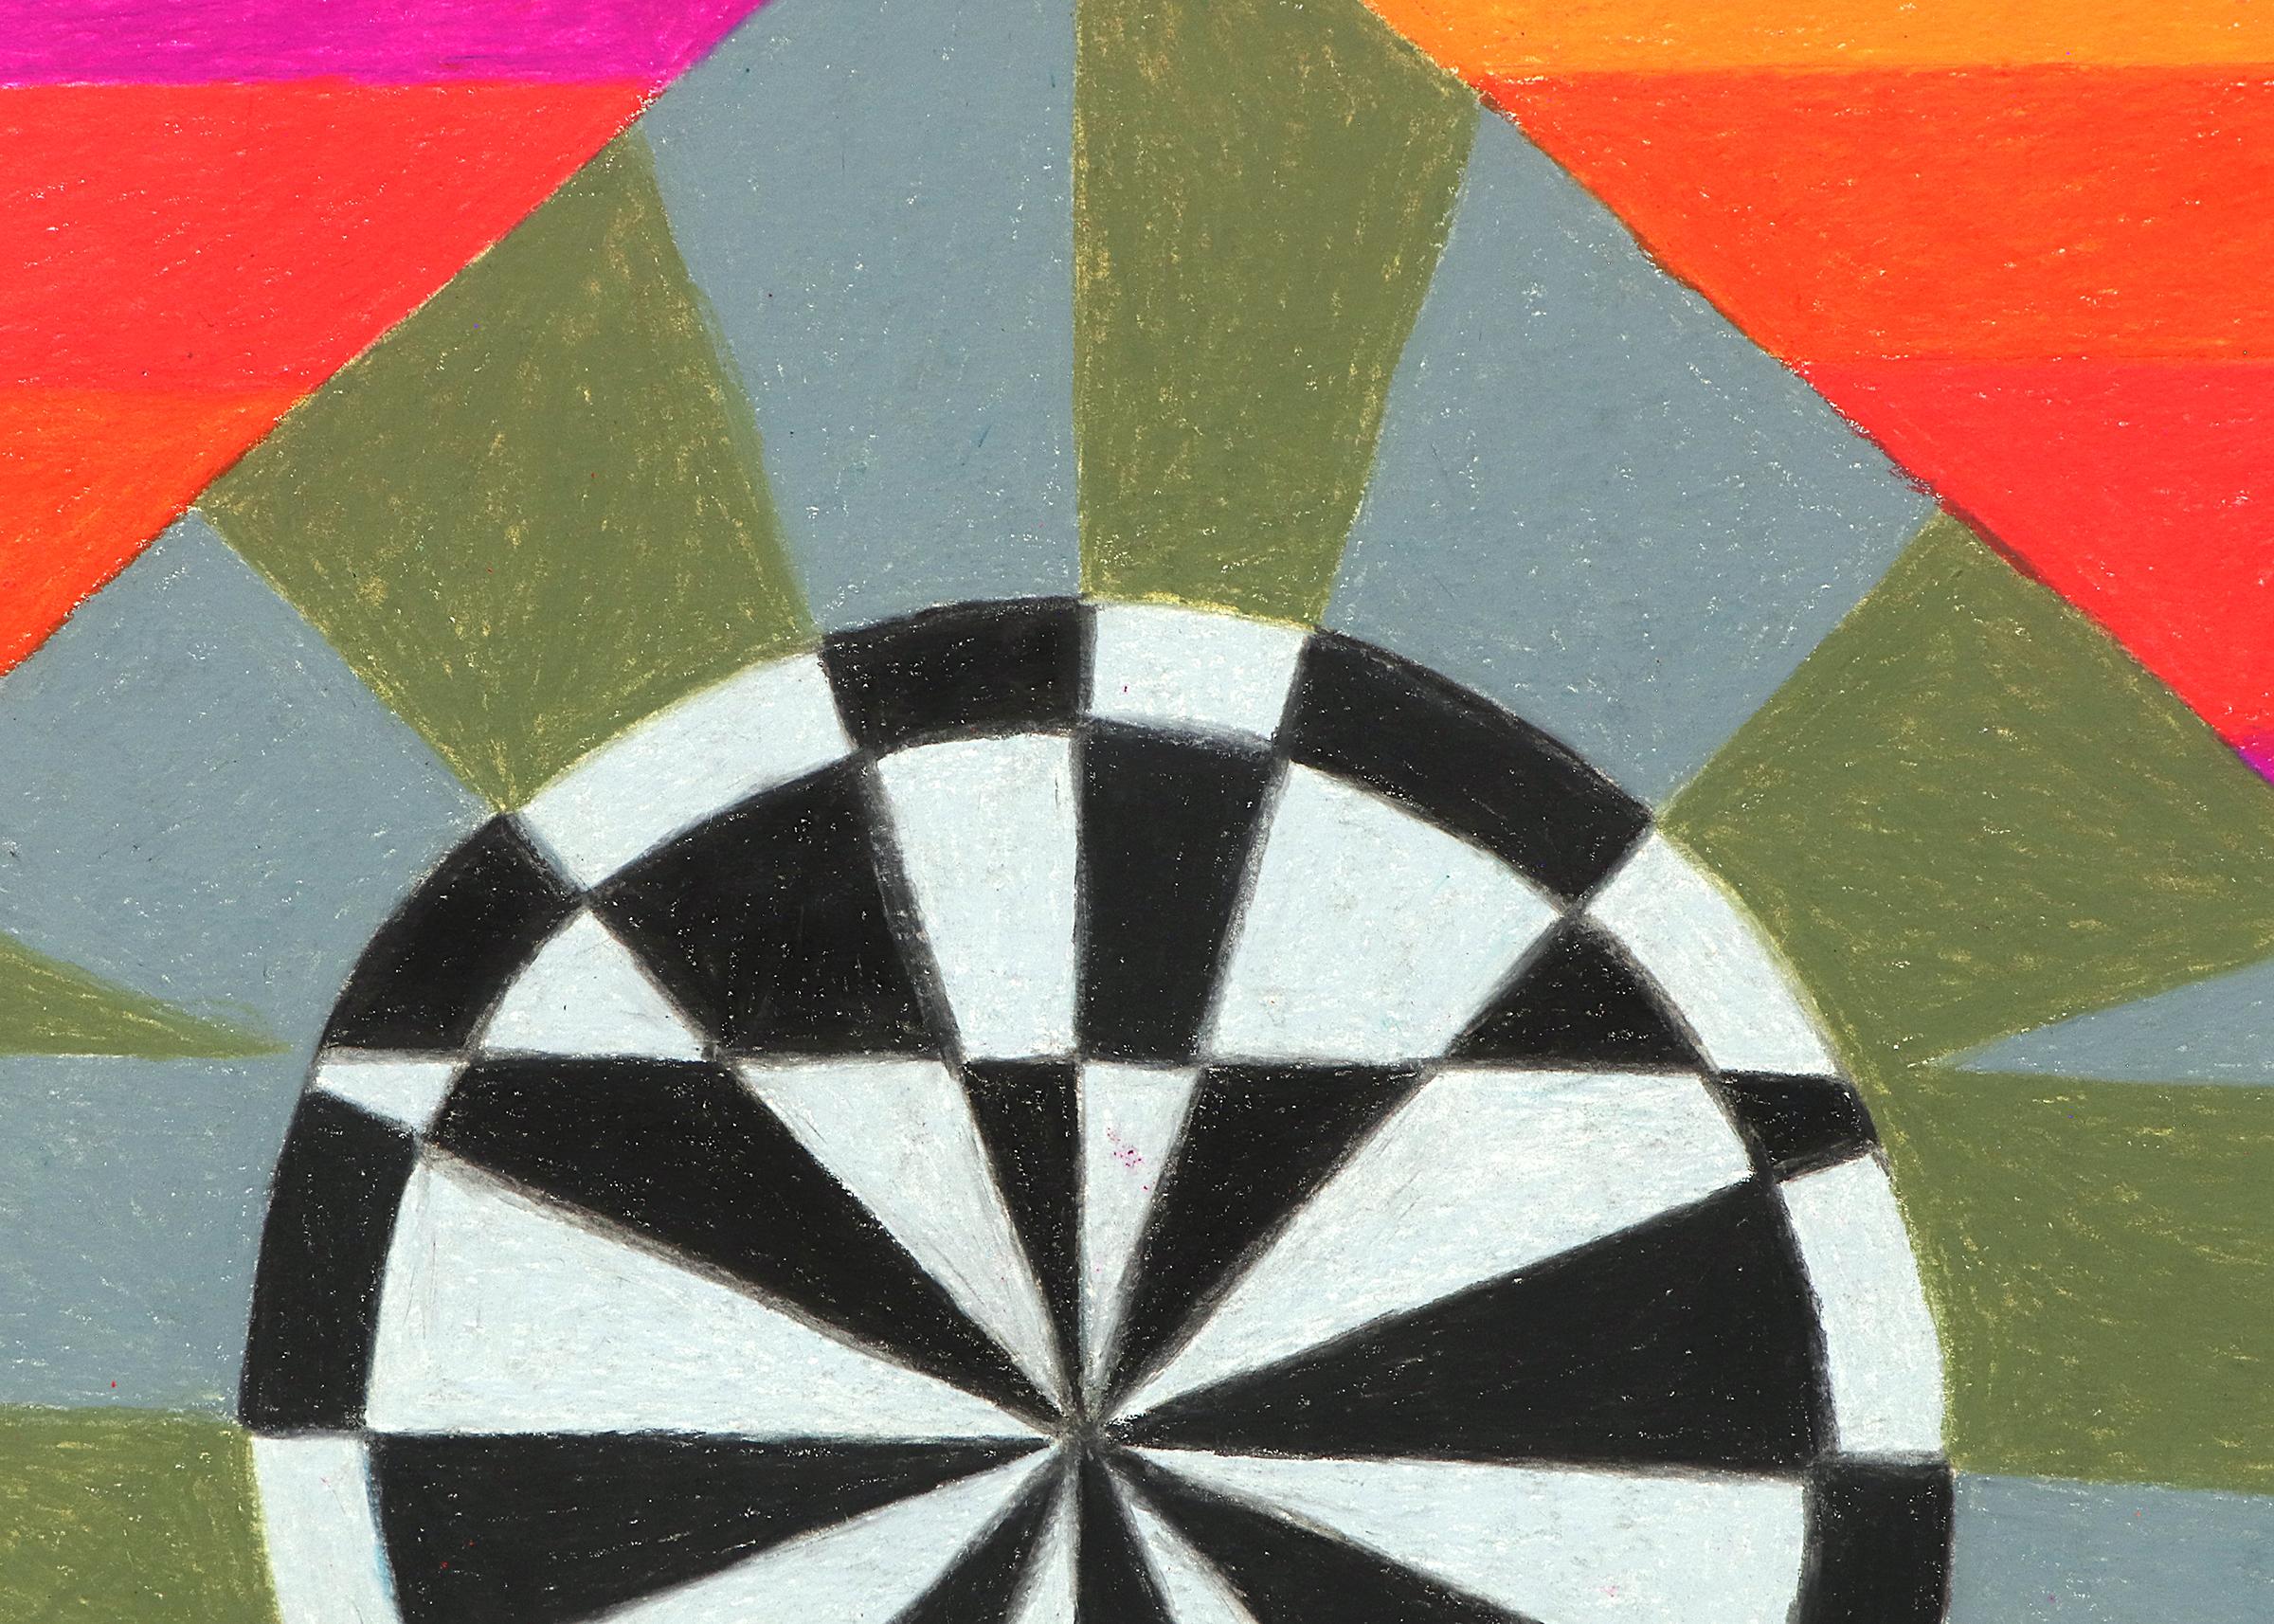 Circus Series : Target est un dessin abstrait au crayon sur papier de Margo Hoff (1910-2008) réalisé en 1980. Composition abstraite dans des tons vibrants d'orange, de rose, de jaune et de bleu avec des accents noirs et blancs. Présenté dans un